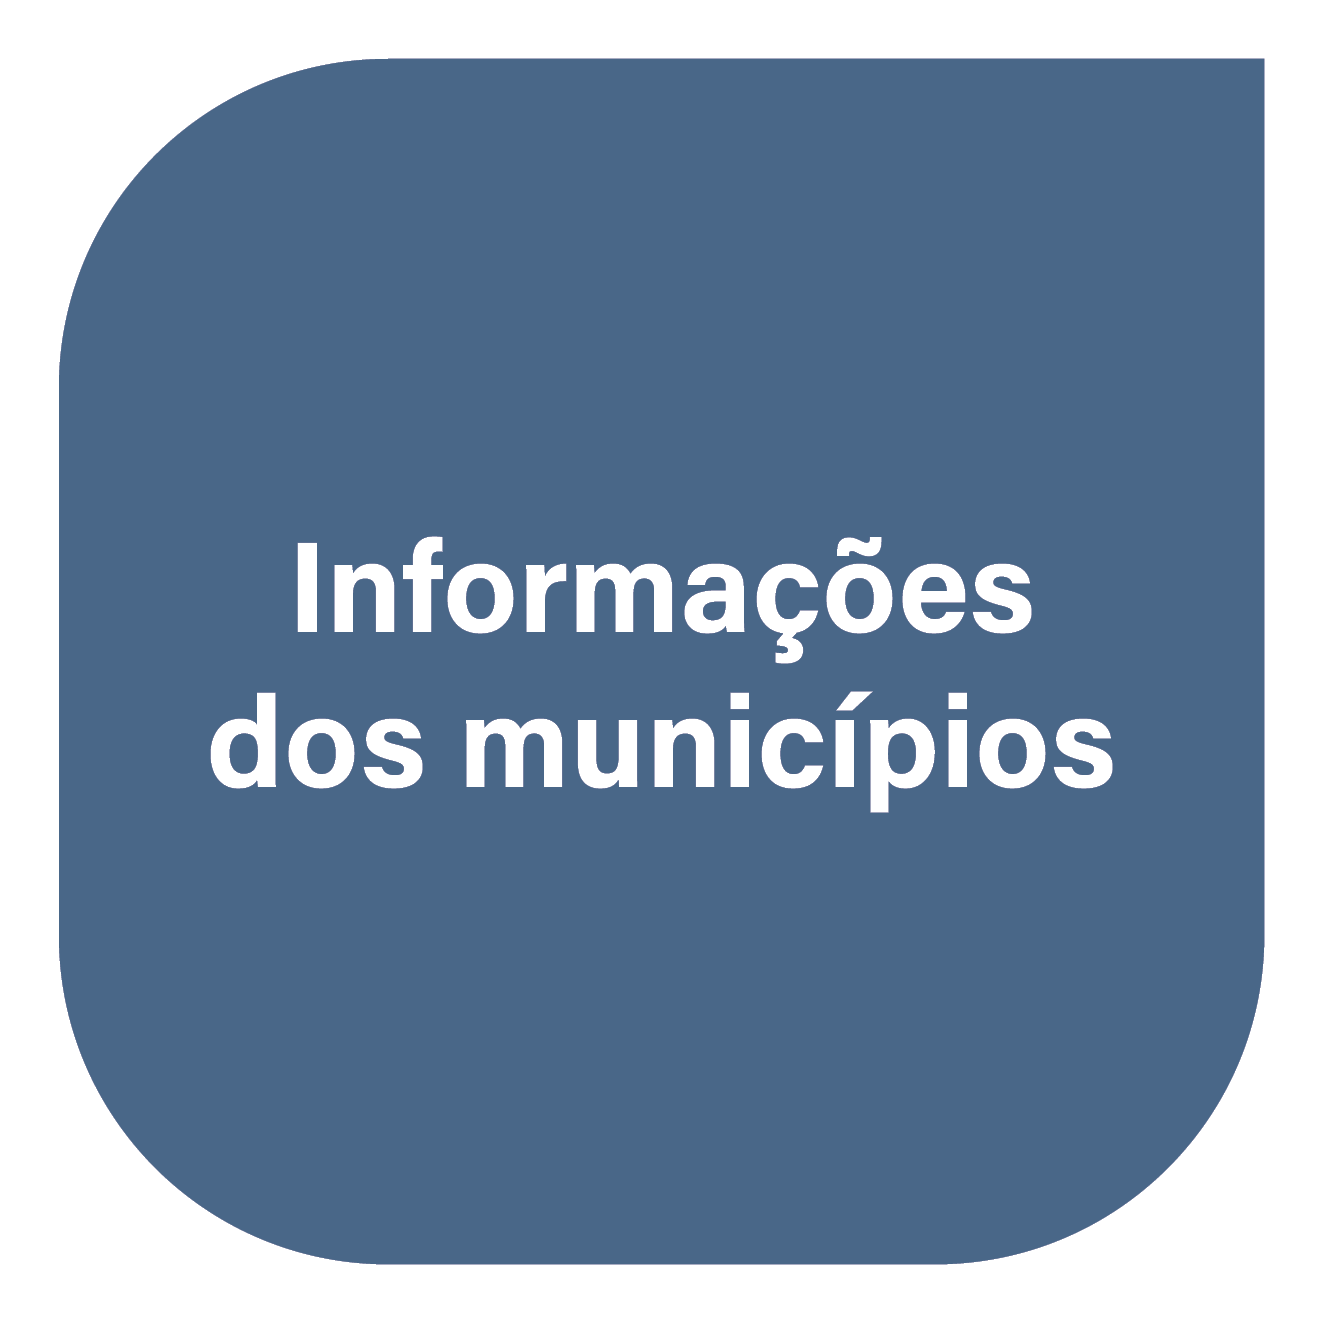 Informações dos municípios